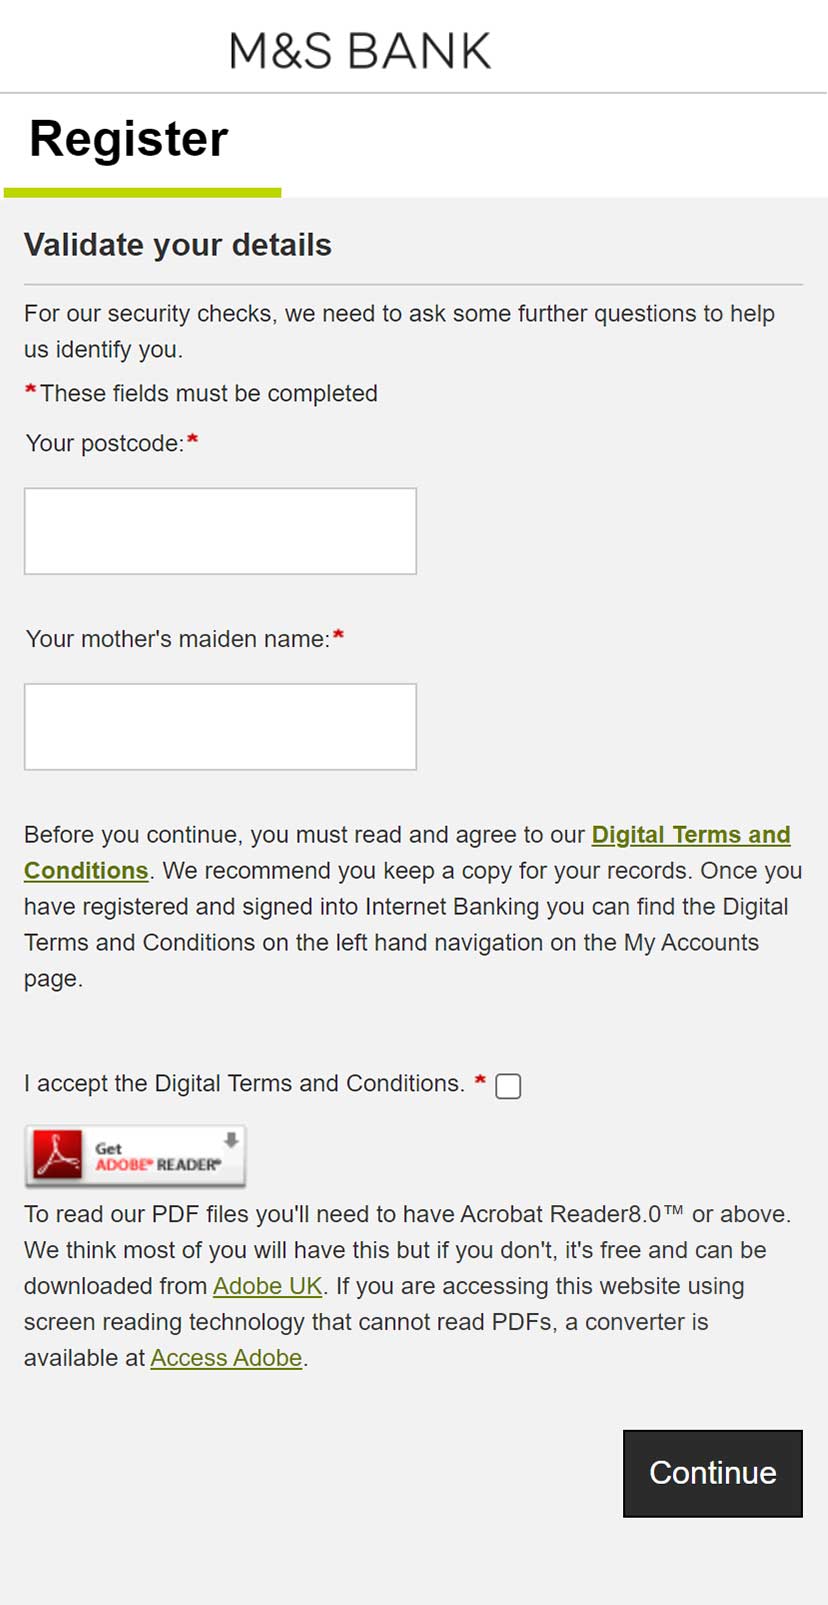 Internet Banking registration validate more details screen.